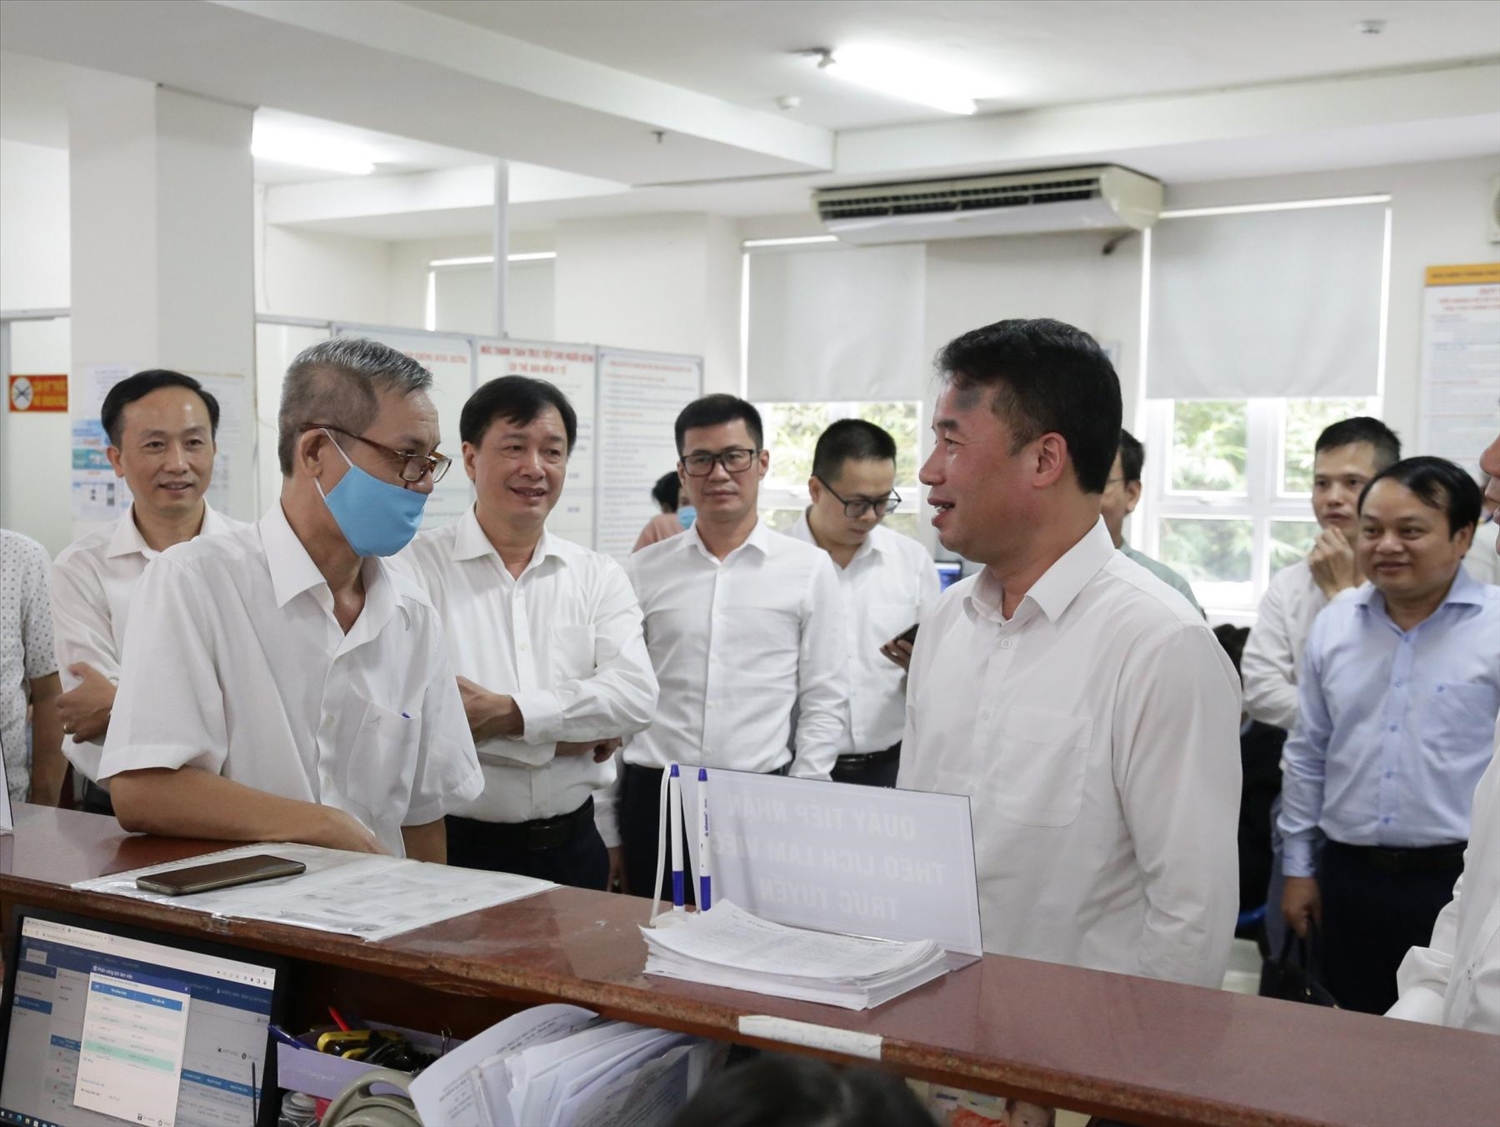 Tổng Giám đốc BHXH Việt Nam Nguyễn Thế Mạnh trao đổi, chia sẻ về công tác chuyển đổi số trong các lĩnh vực hoạt động của ngành BHXH Việt Nam.